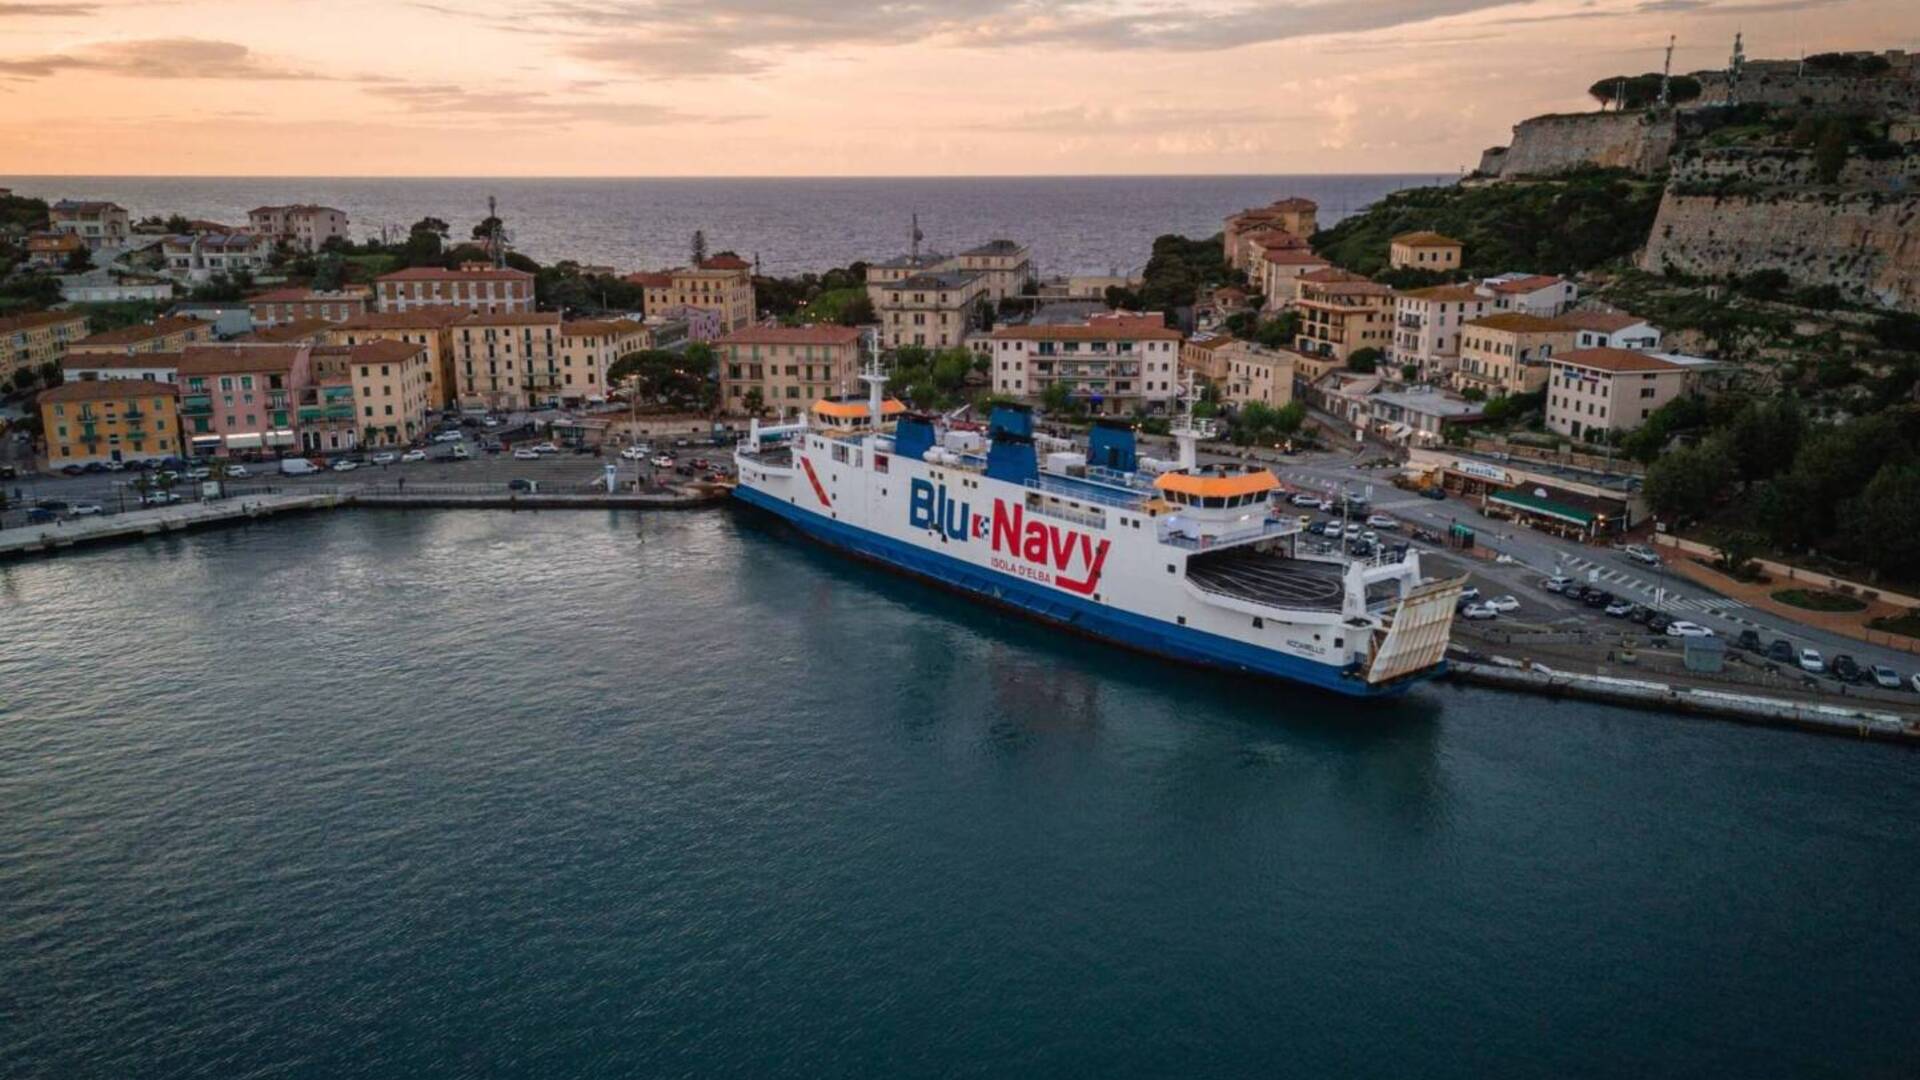 Traghetti per l’isola d’Elba: come risparmiare e viaggiare meglio